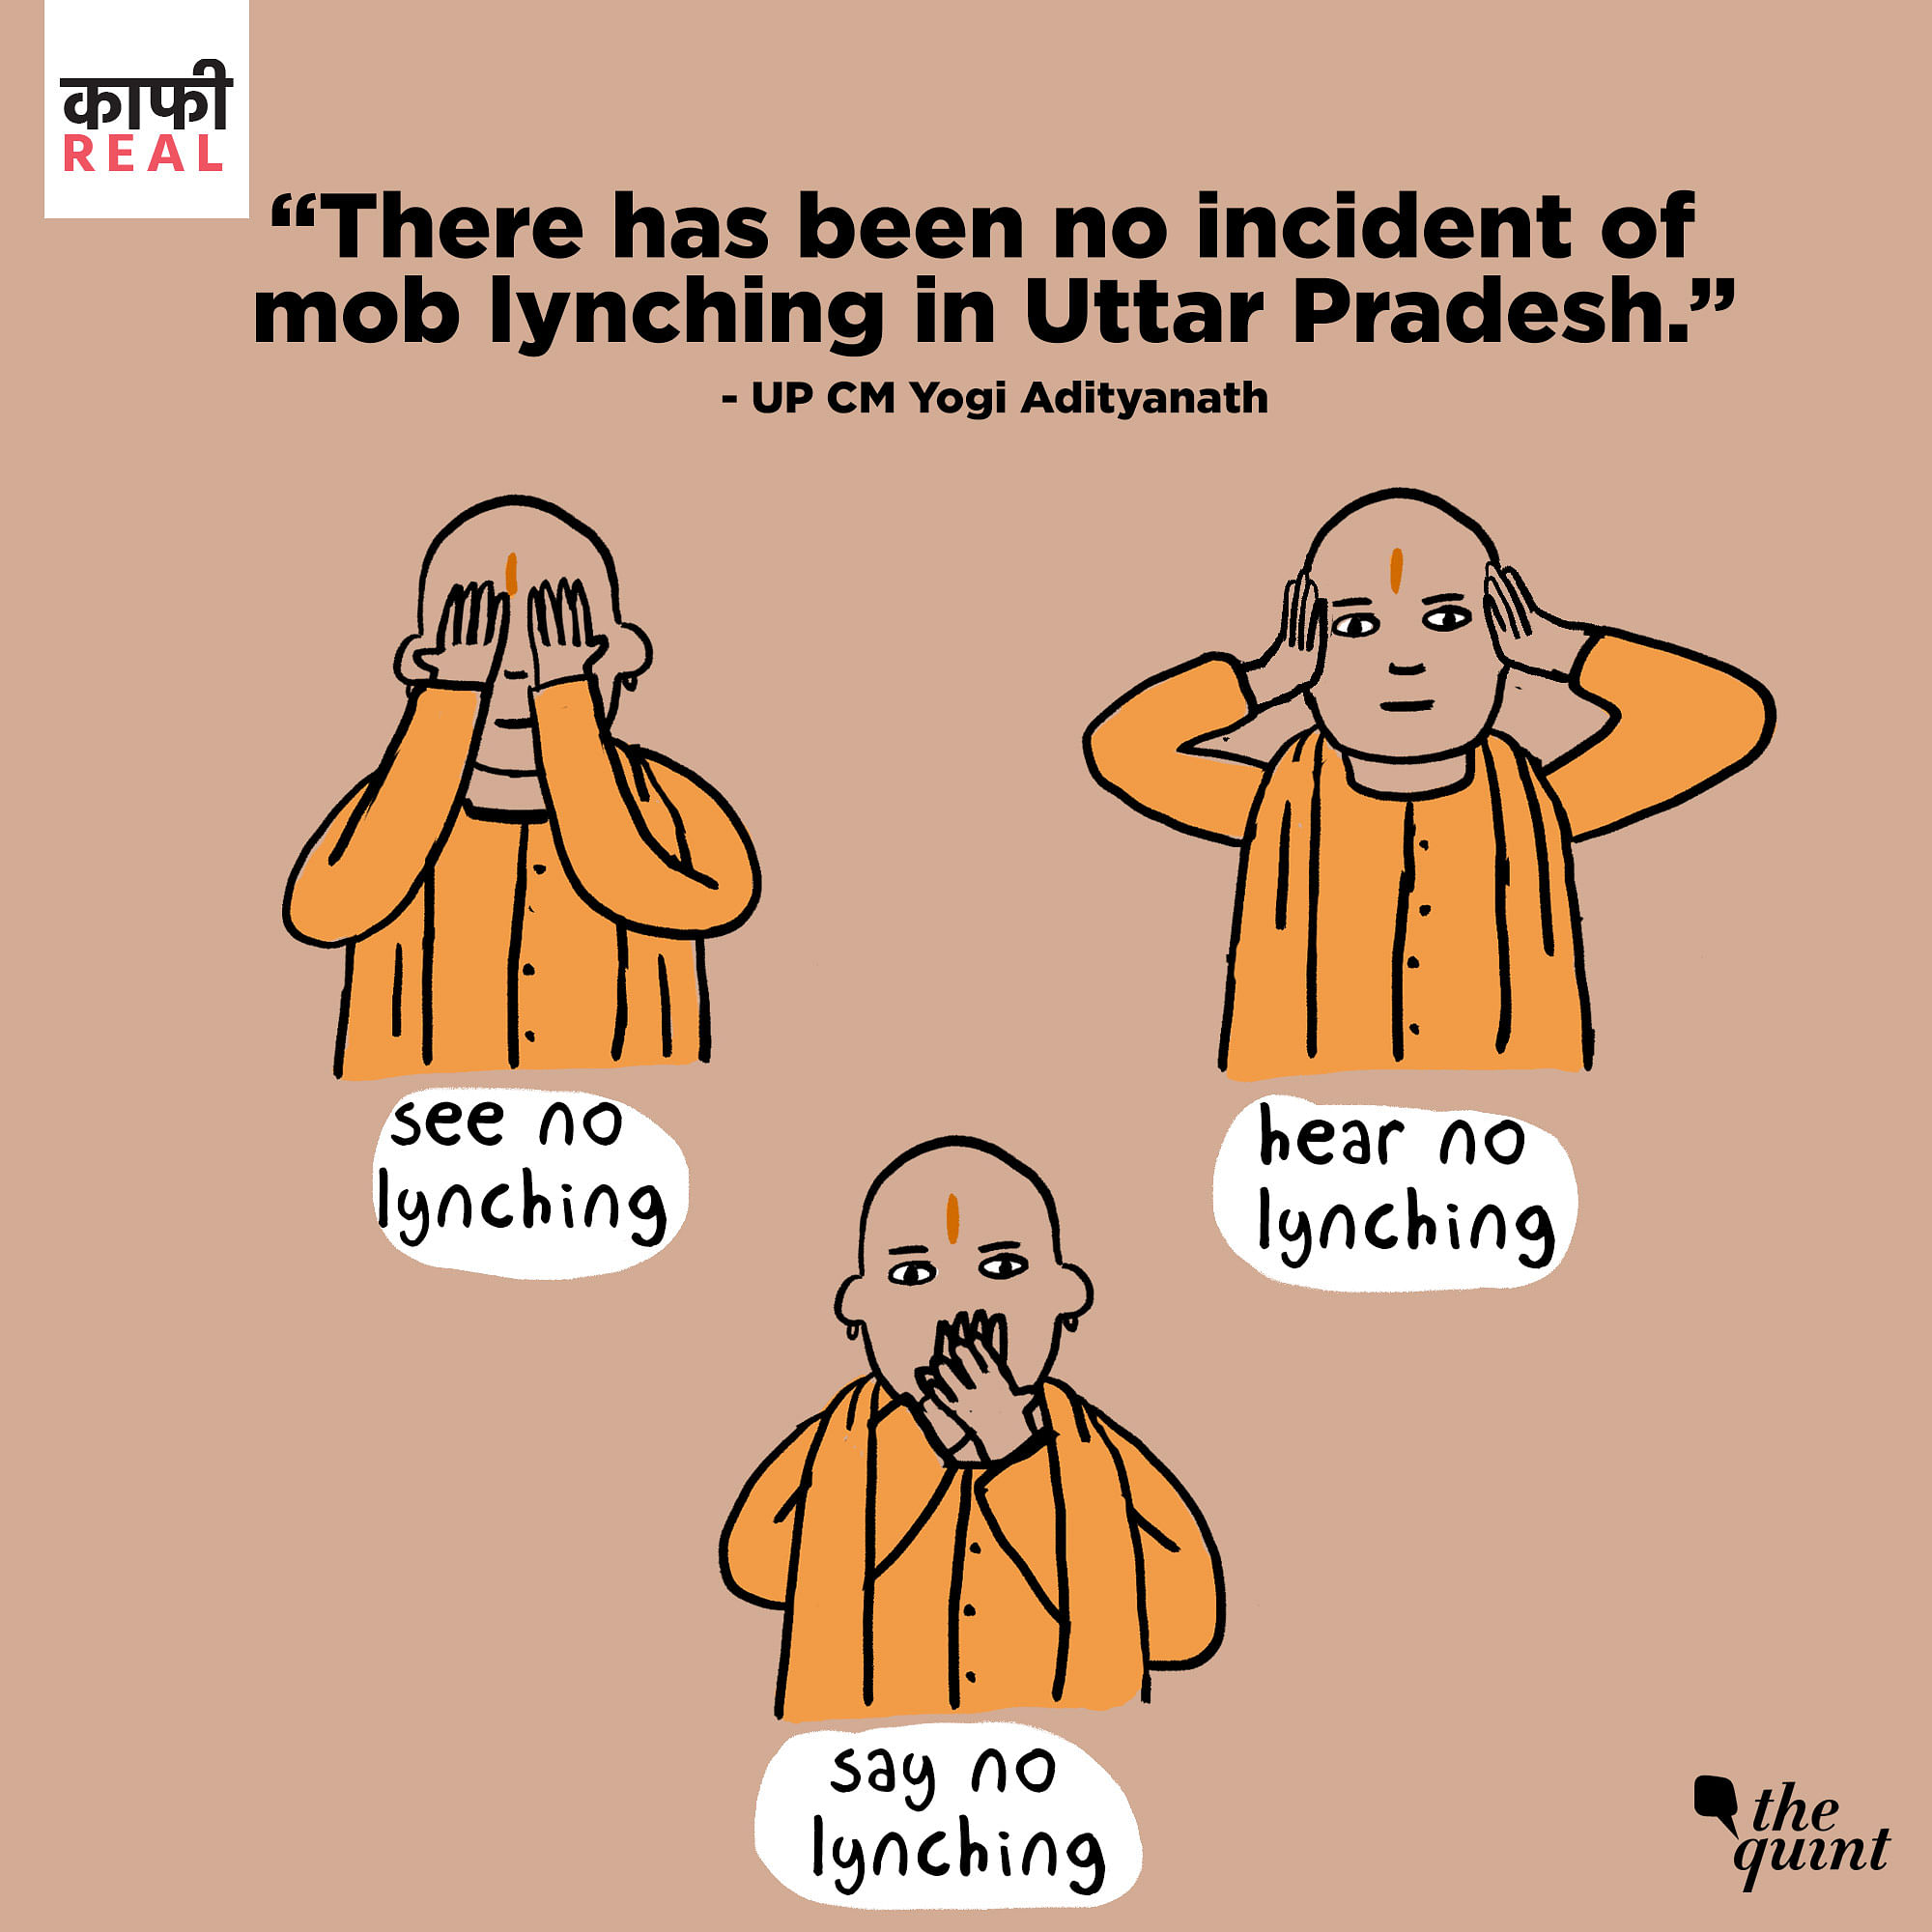 No Mob Lynching Case in UP”: Honest Cartoon on CM Yogi Adityanath